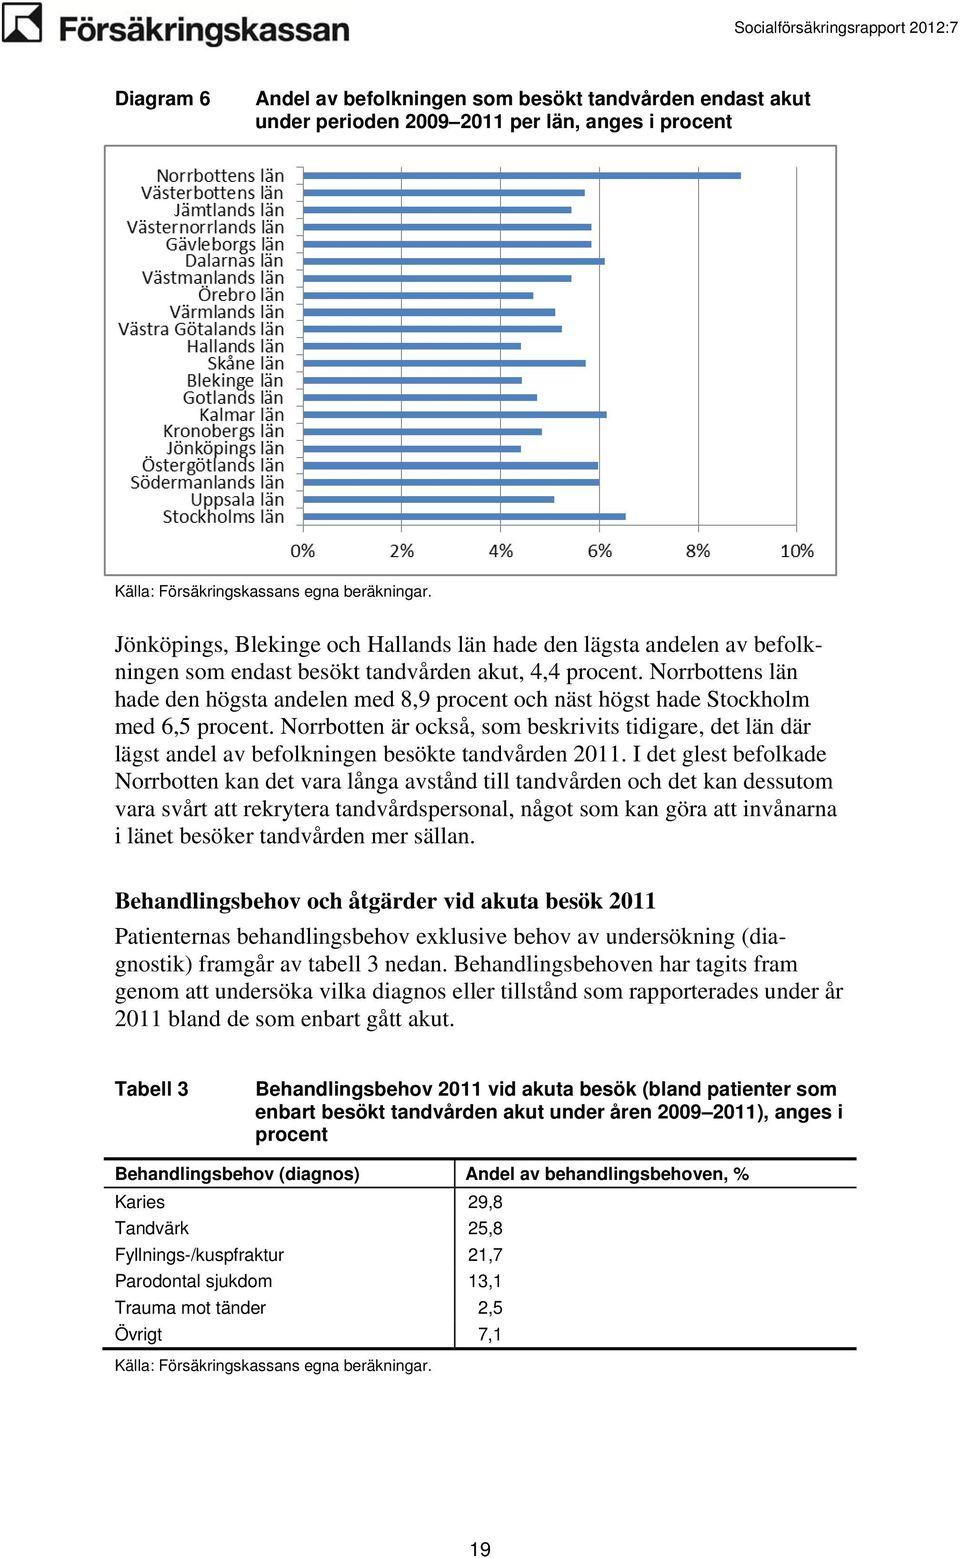 Norrbotten är också, som beskrivits tidigare, det län där lägst andel av befolkningen besökte tandvården 2011.